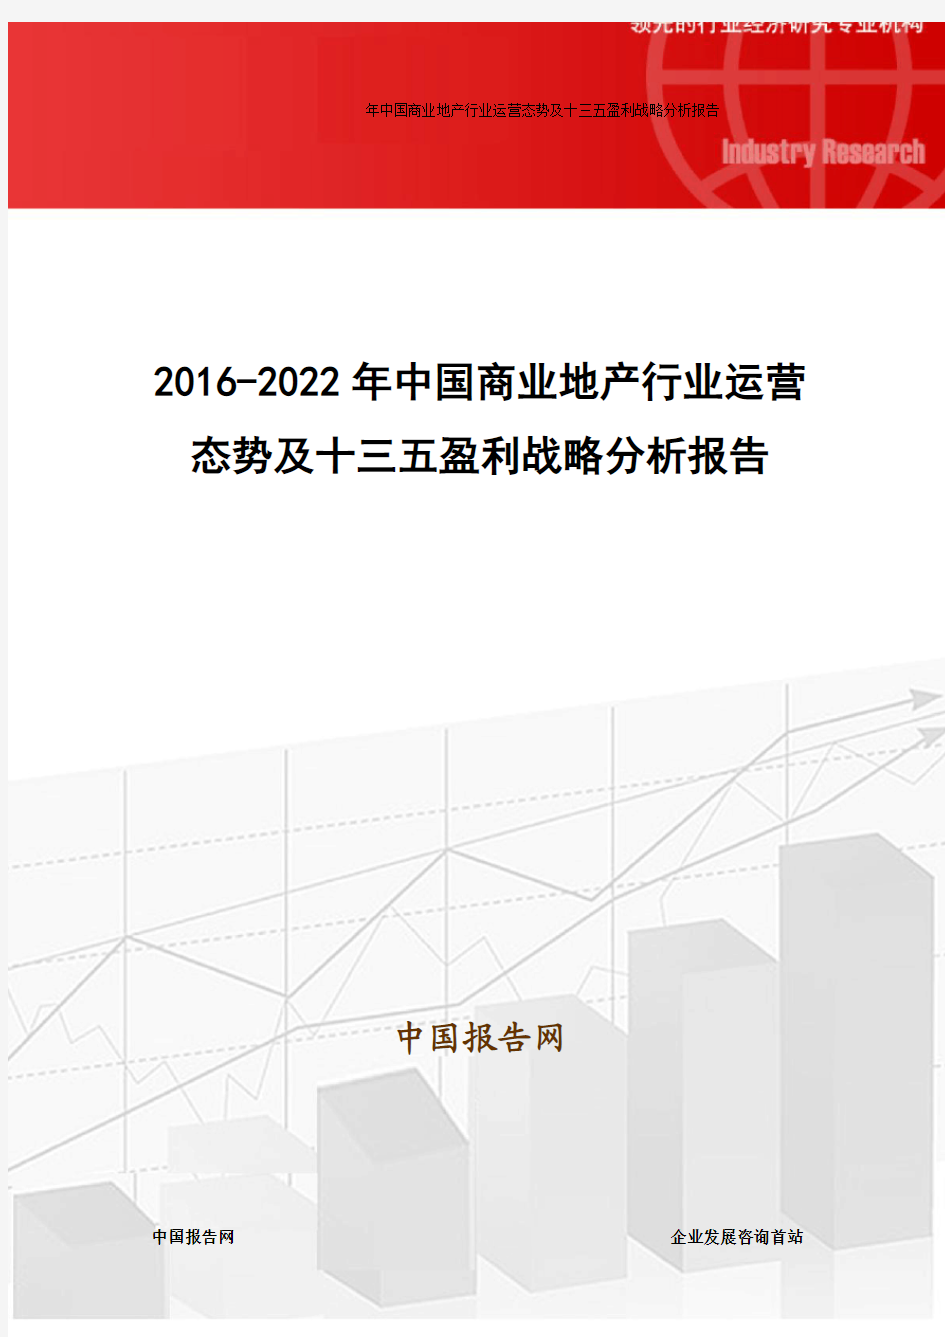 2016-2022年中国商业地产行业运营态势及十三五盈利战略分析报告